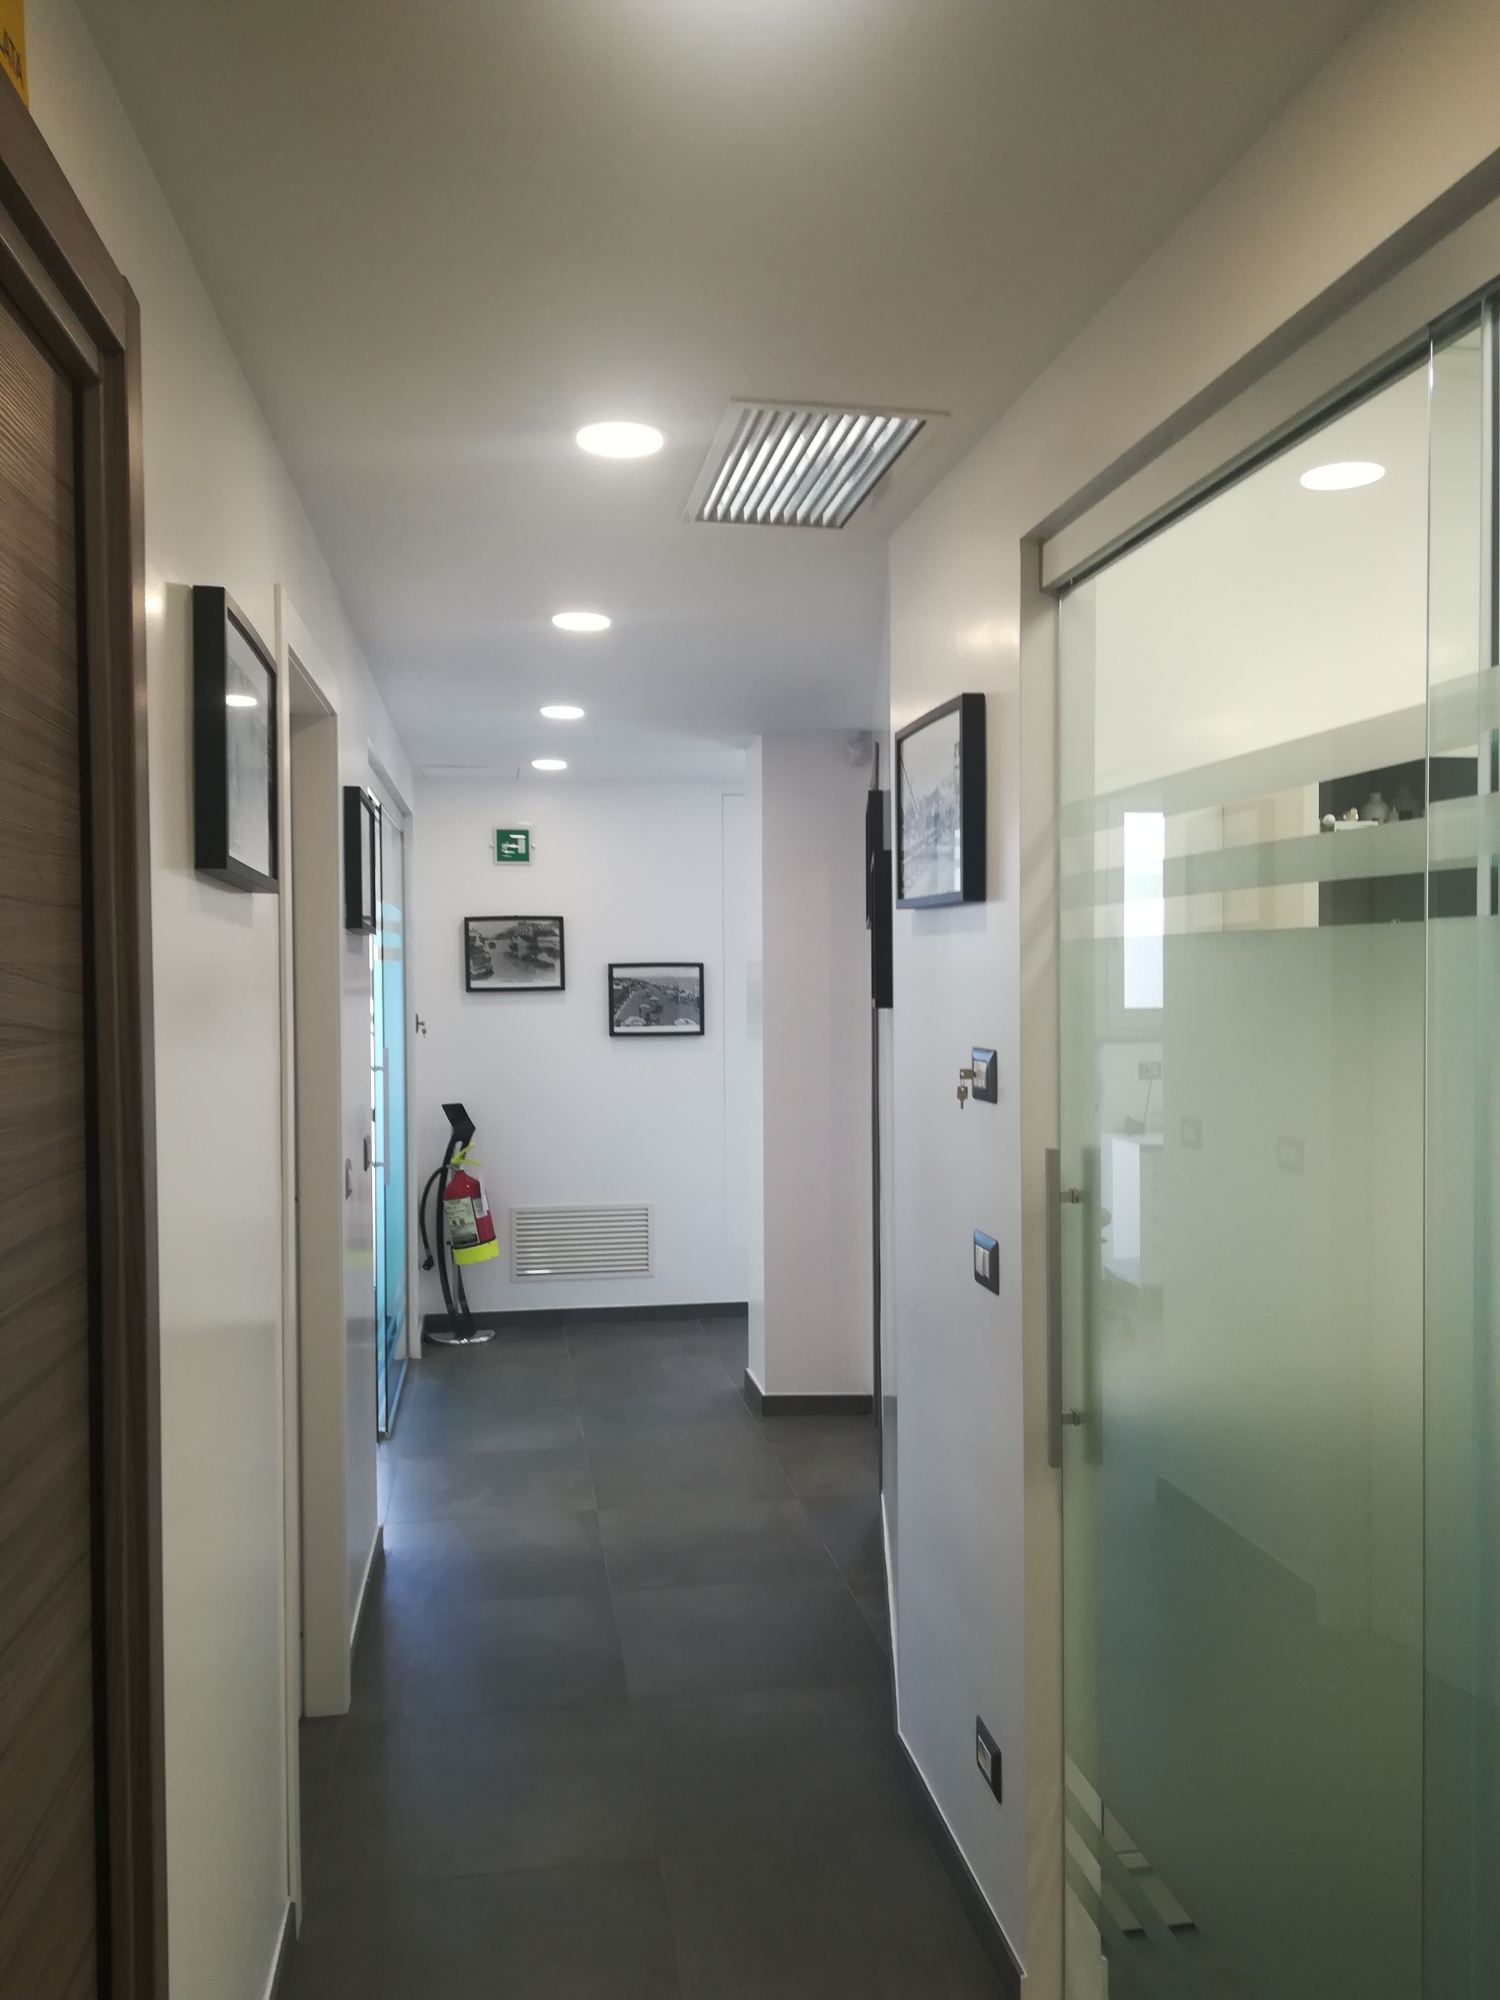 Corridoio - studio odontoiatrico progetto - Architetto - Led - soffitto in cartongesso